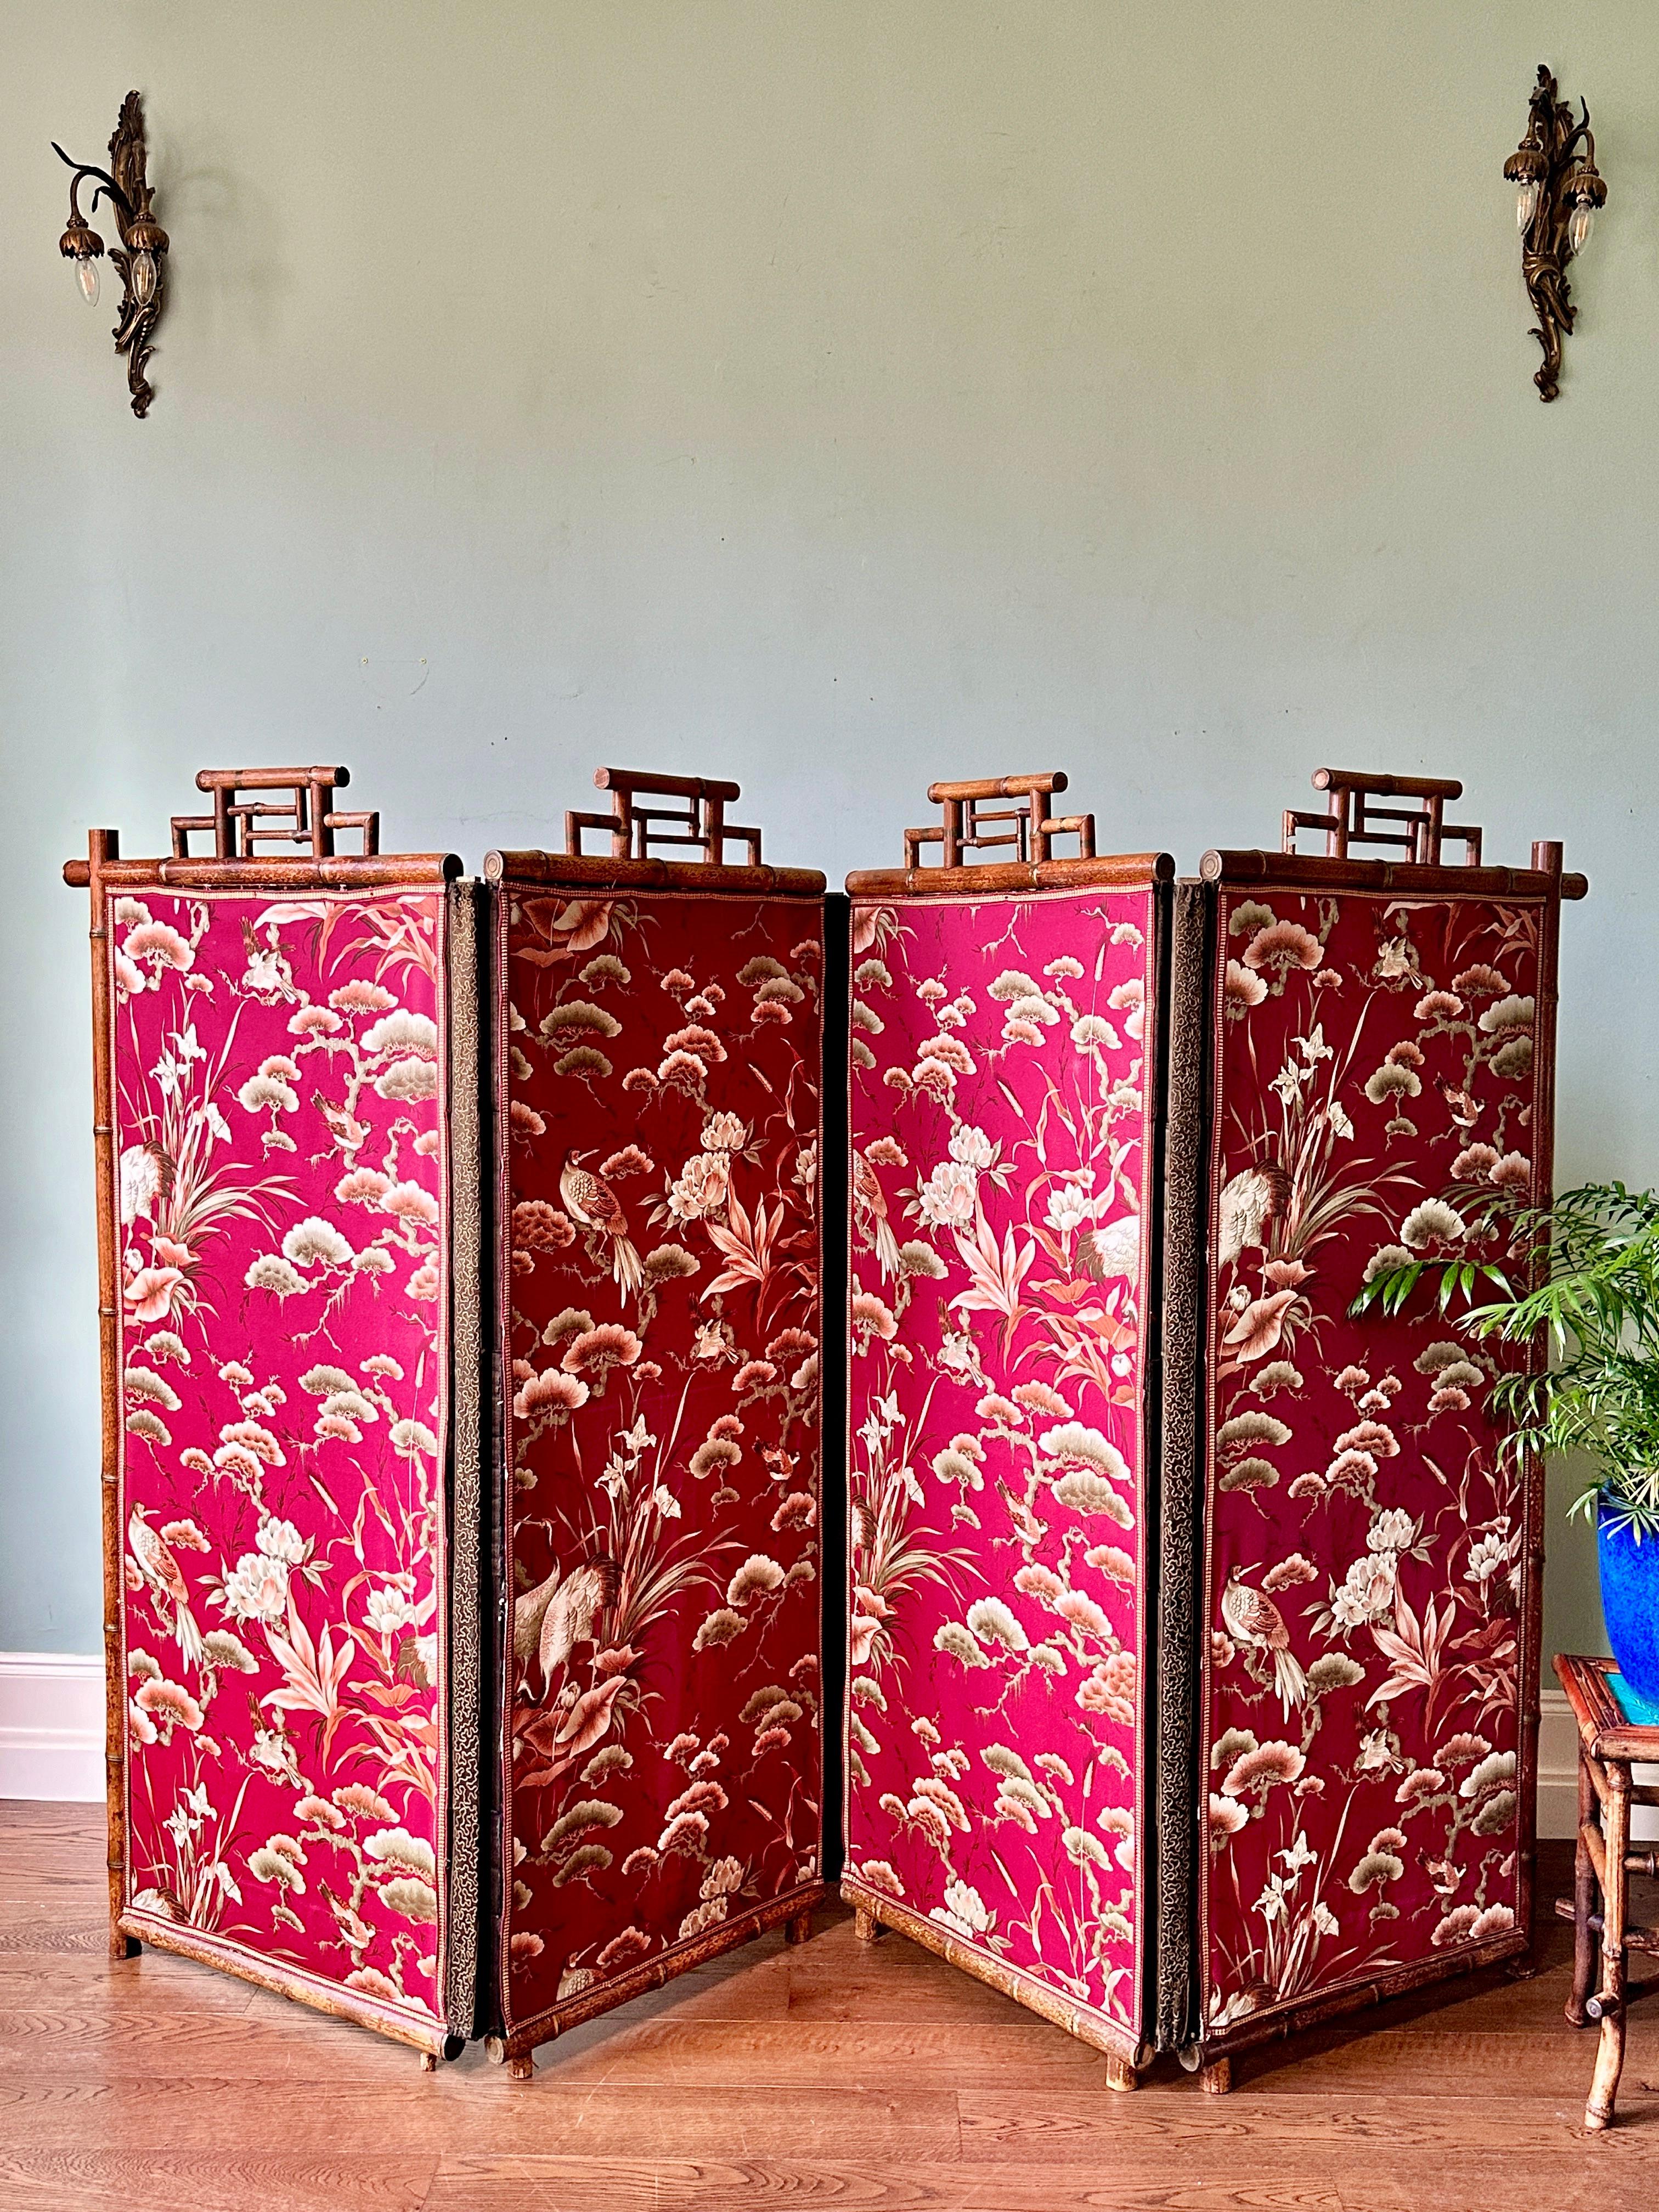 Großer japanischer Seiden- und Bambusschirm aus dem 19. Jahrhundert.

Ein wirklich prächtiger vierfacher Raumteiler mit Seidenpaneelen, die eine Waldszene mit Vögeln und Blumen darstellen. Jedes Paneel verfügt über eine Bambuskrone mit verblichenen